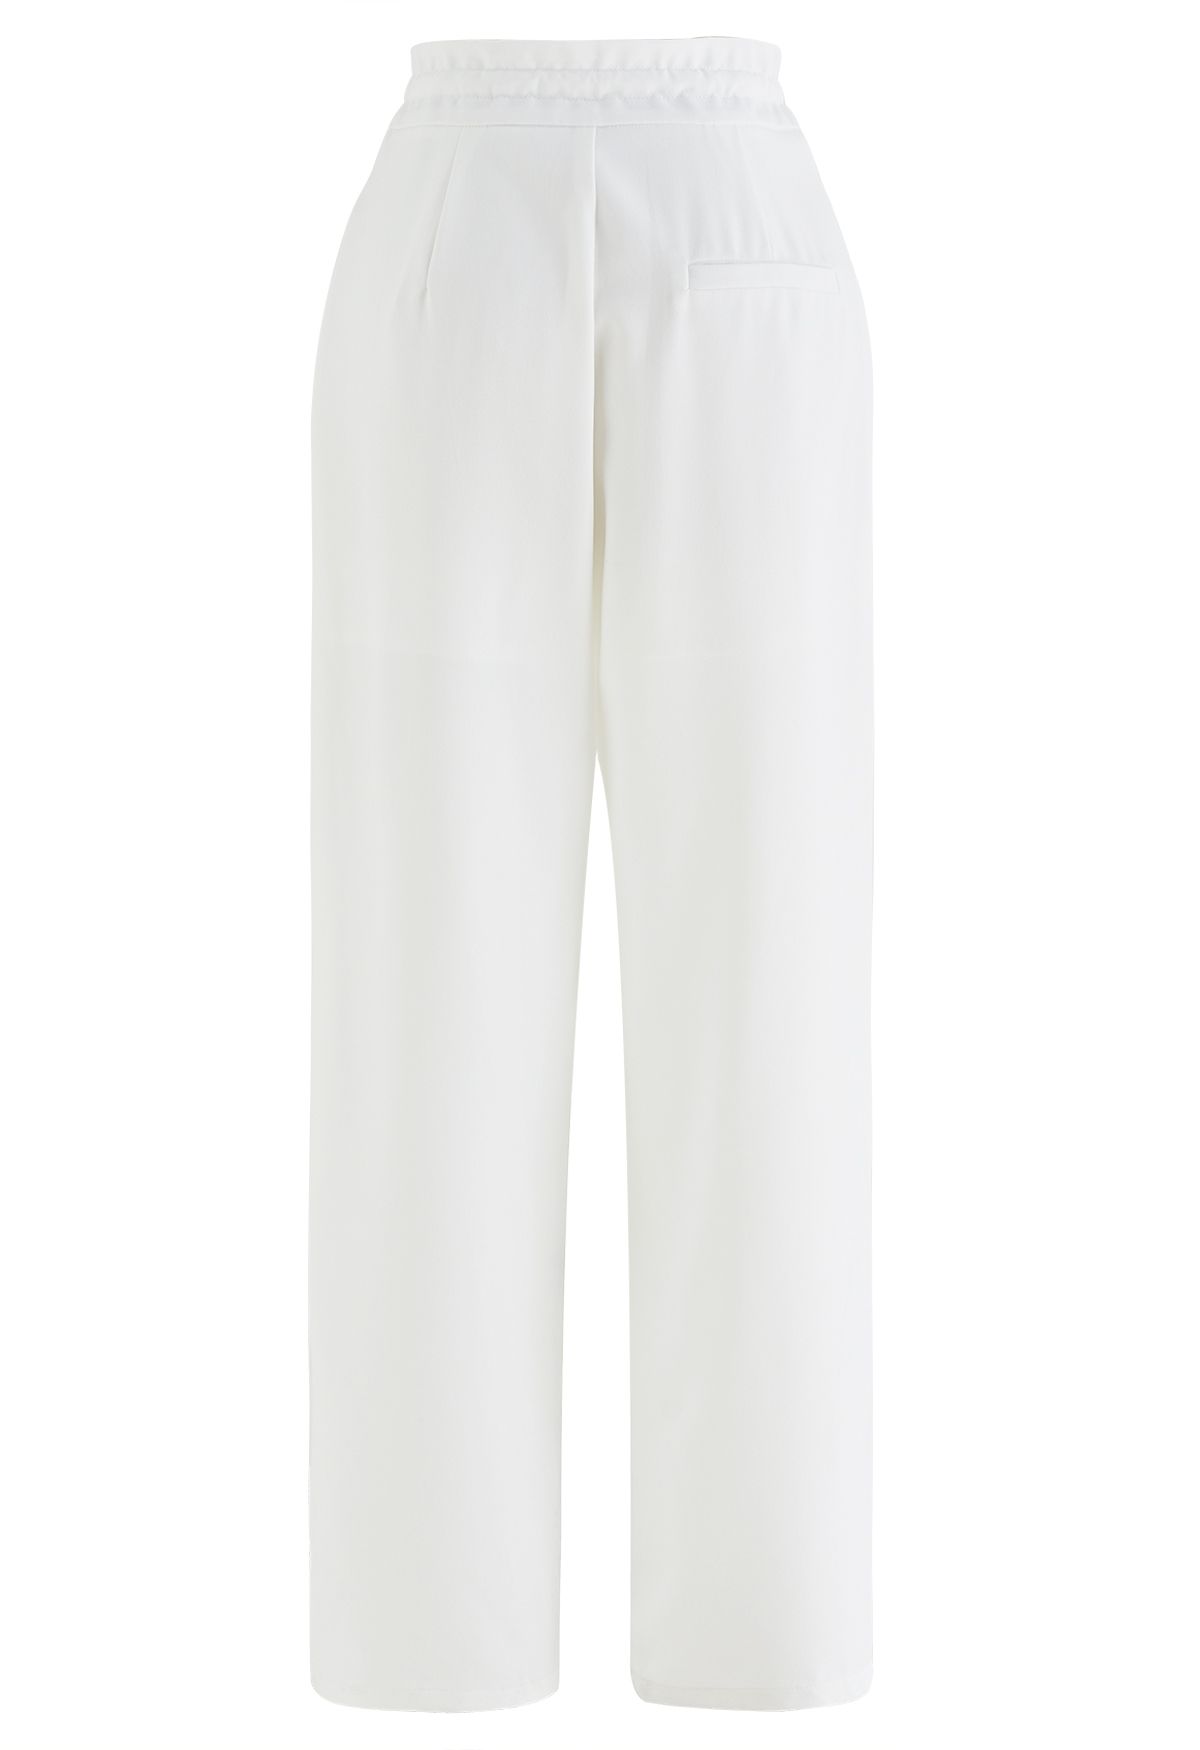 Pantalones de pernera ancha con cordón en la cintura con detalle plisado en blanco